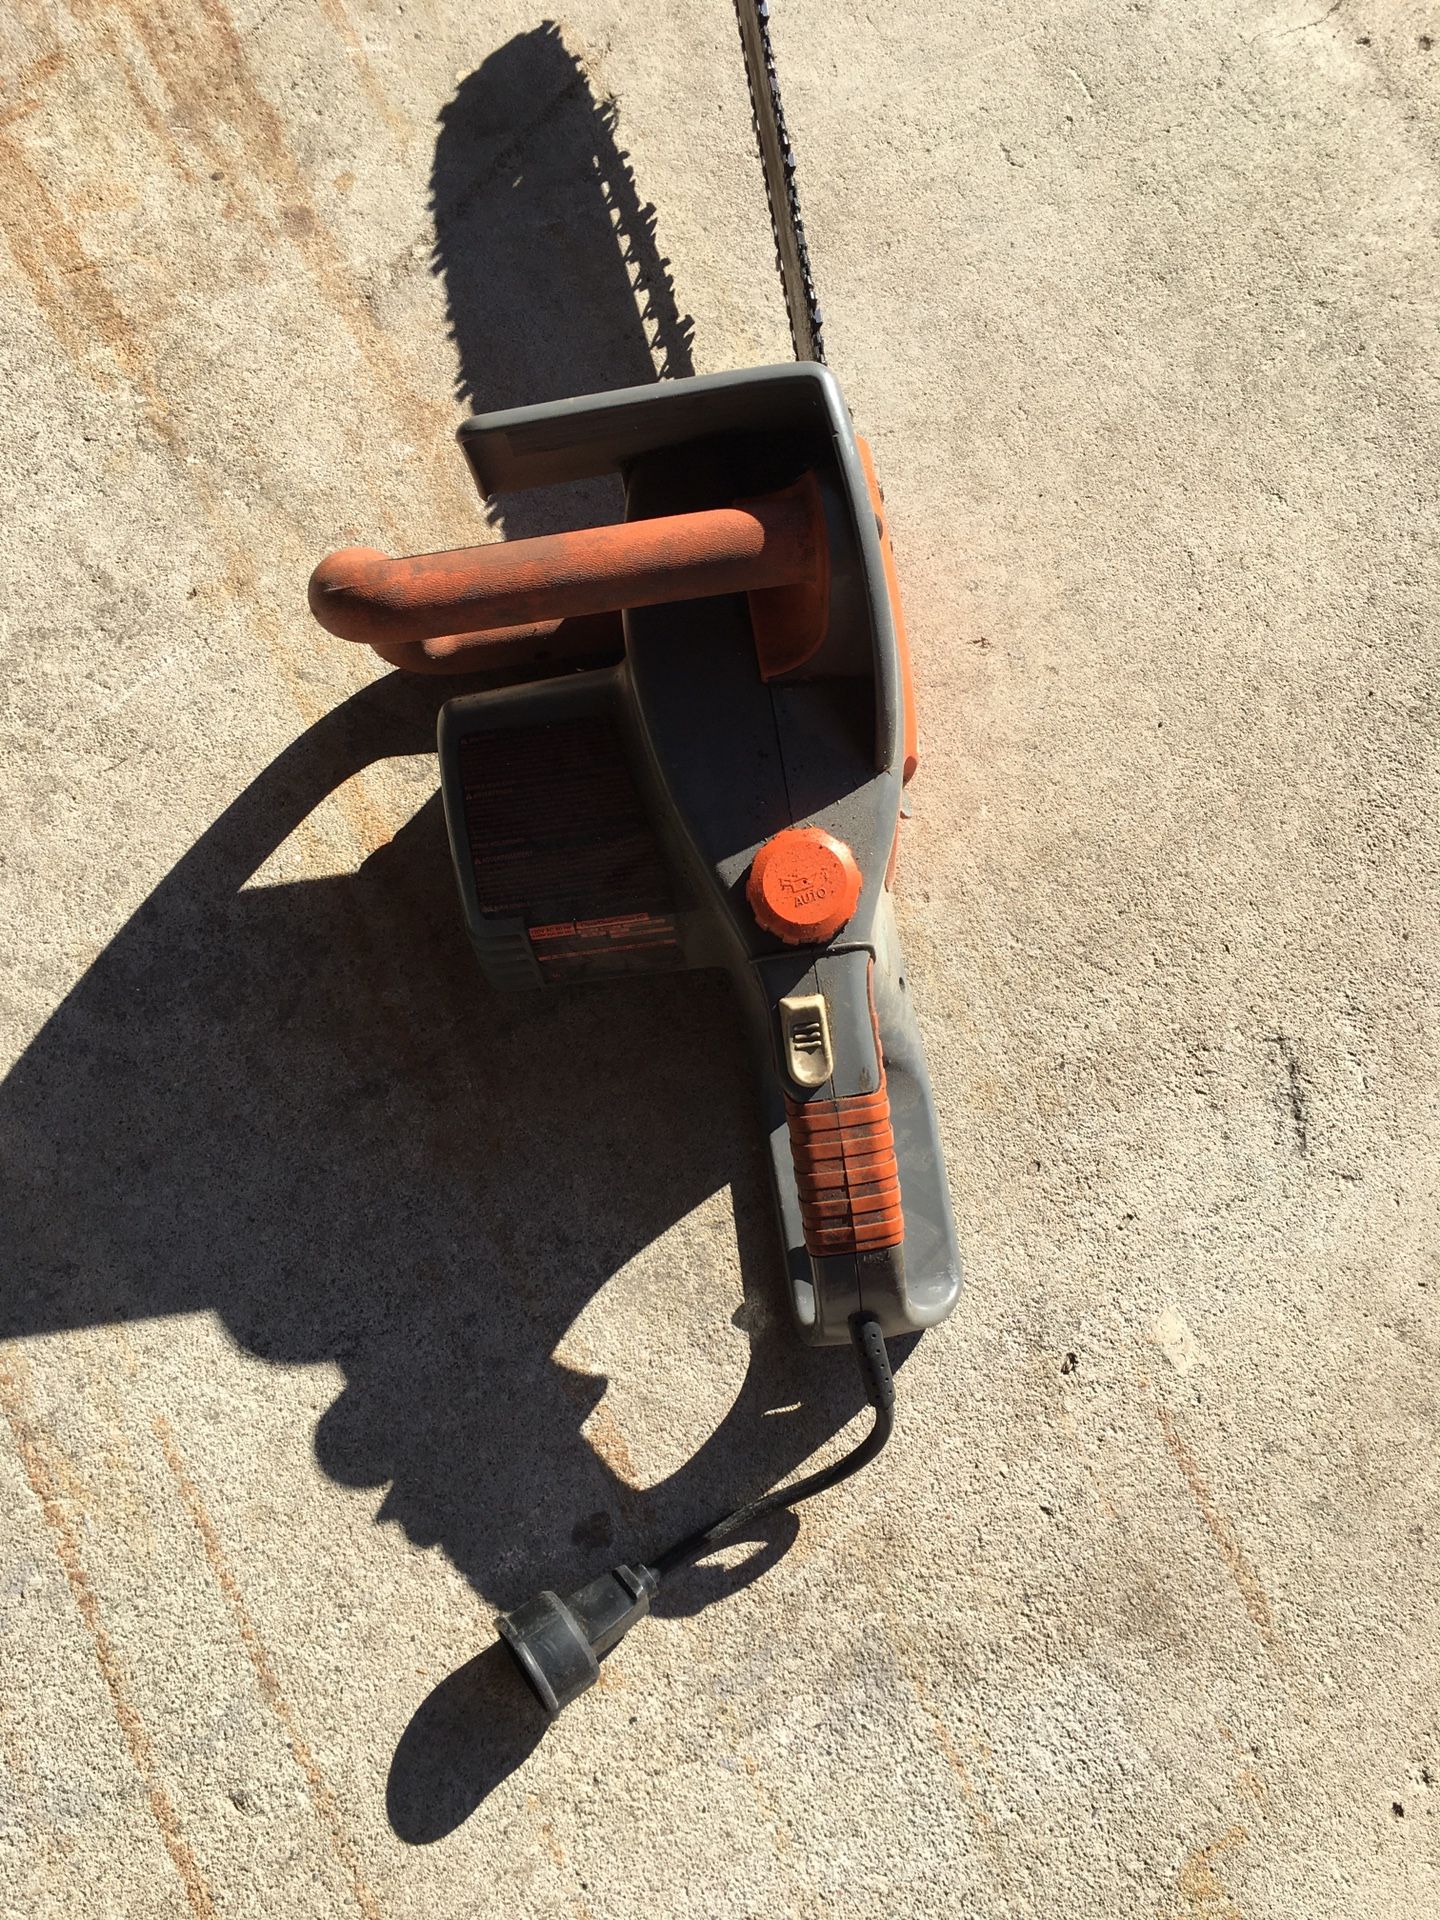 Lawn Detacher $100, chainsaw $45